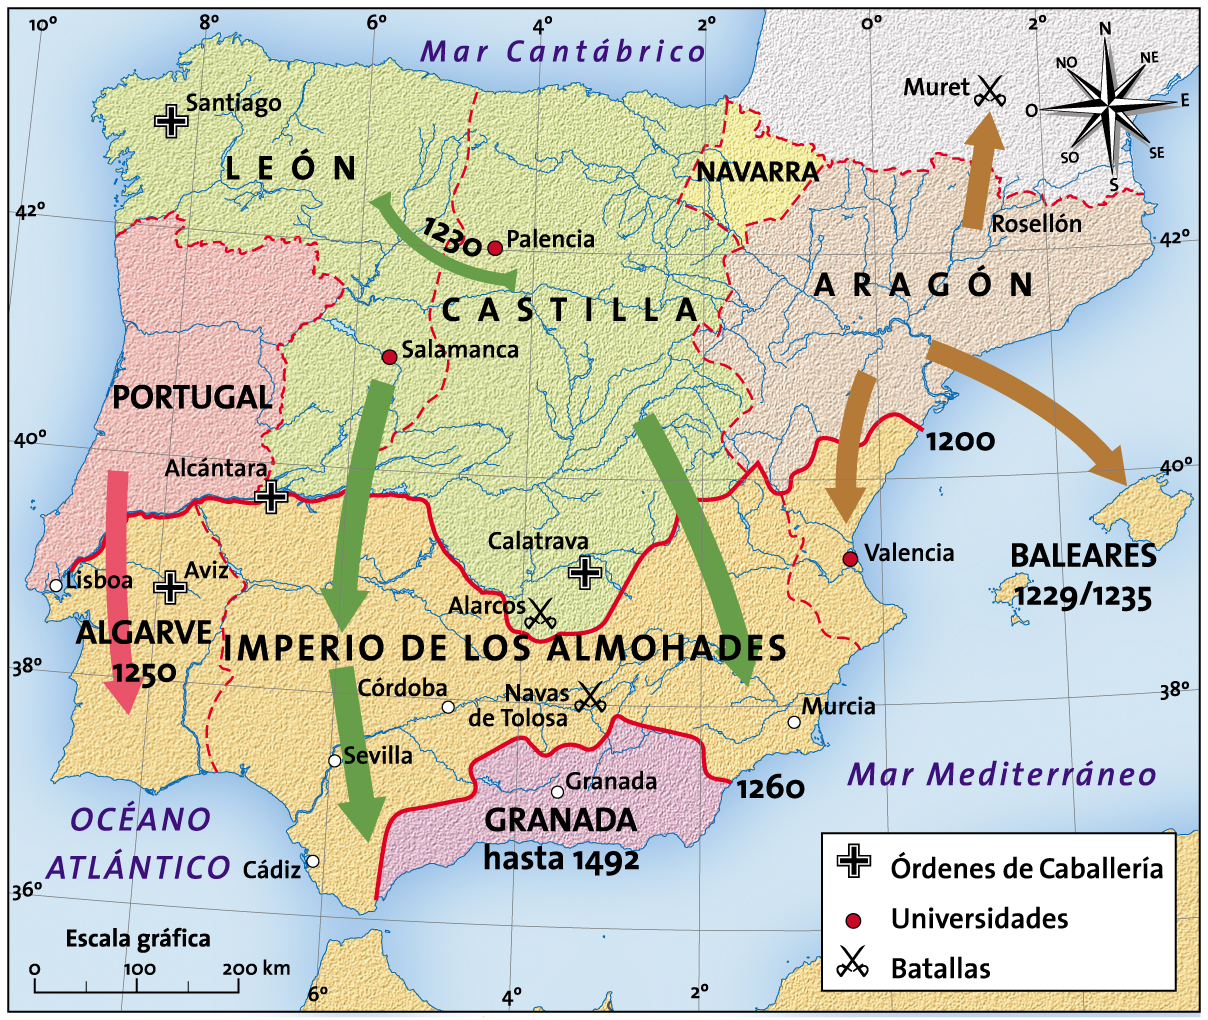 La península Ibérica hacia el año 1200